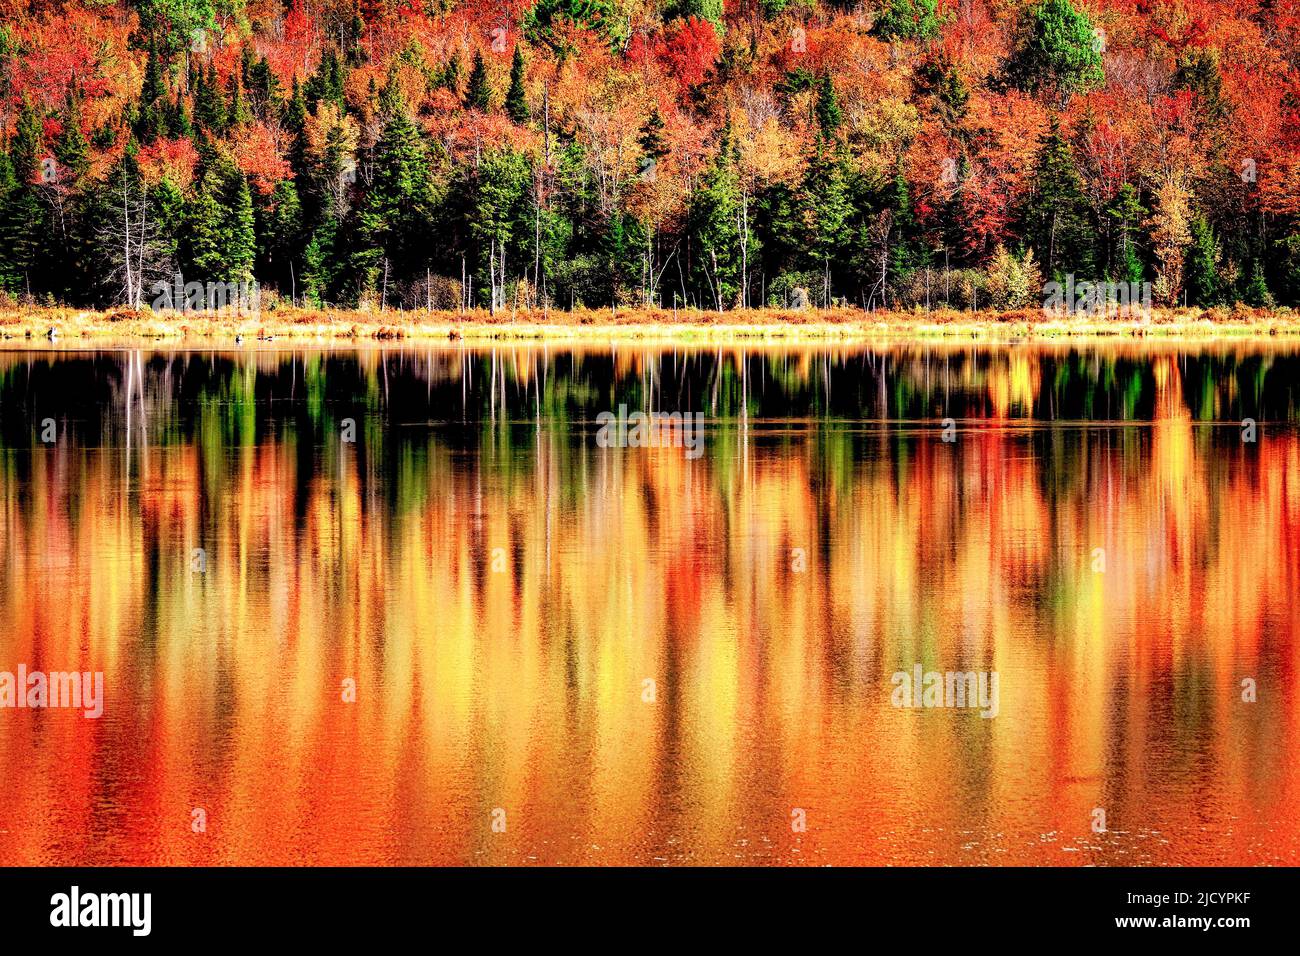 Die Herbstfarbe spiegelt sich in den stillen Gewässern von Long Pond in der Nähe von Belvidere Corners, Vermont. Stockfoto